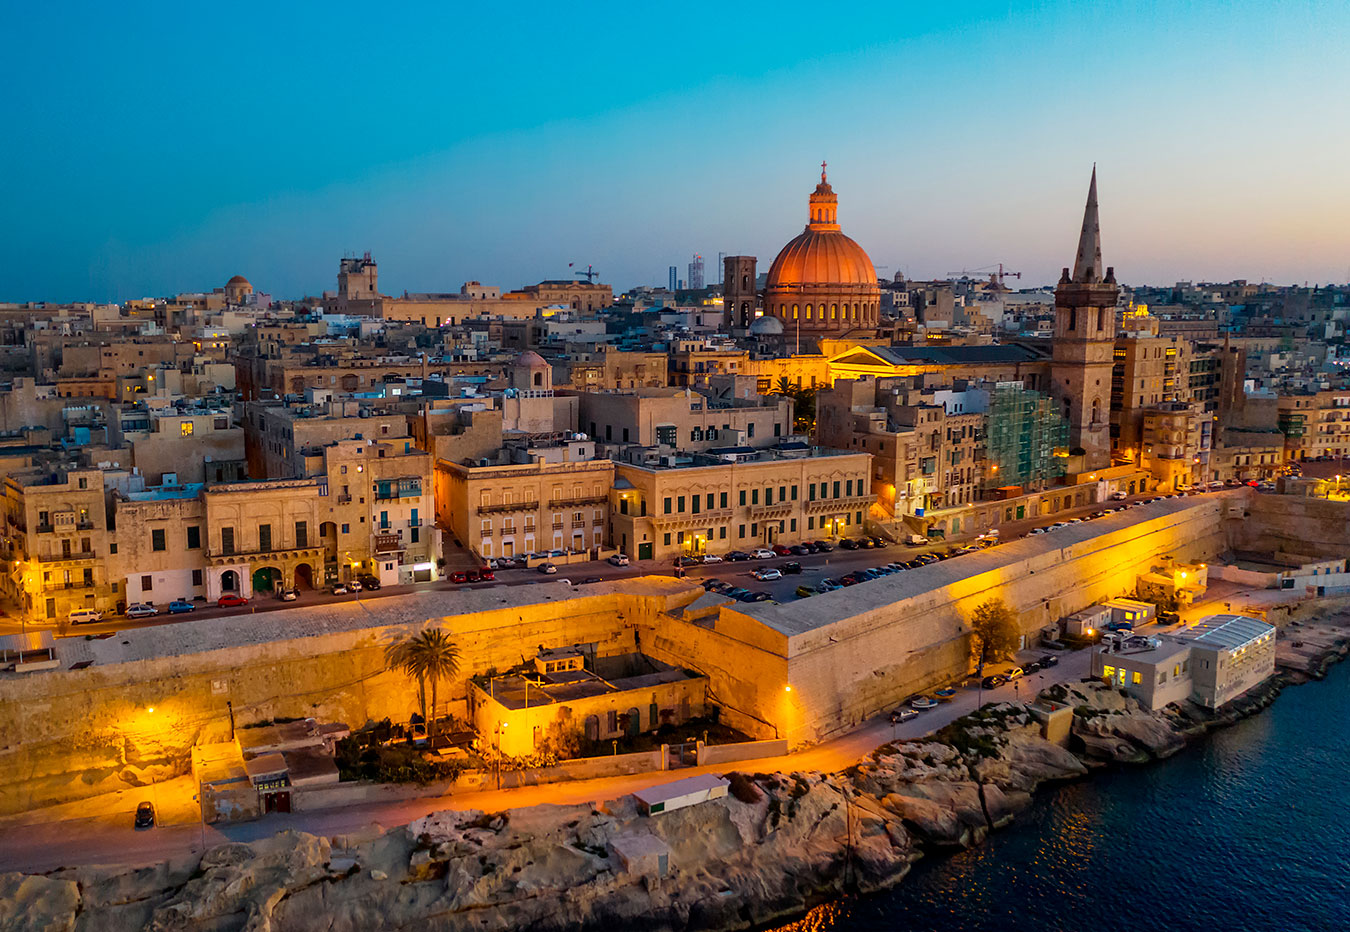 O que fazer em Malta: atrações do belíssimo arquipélago mediterrâneo